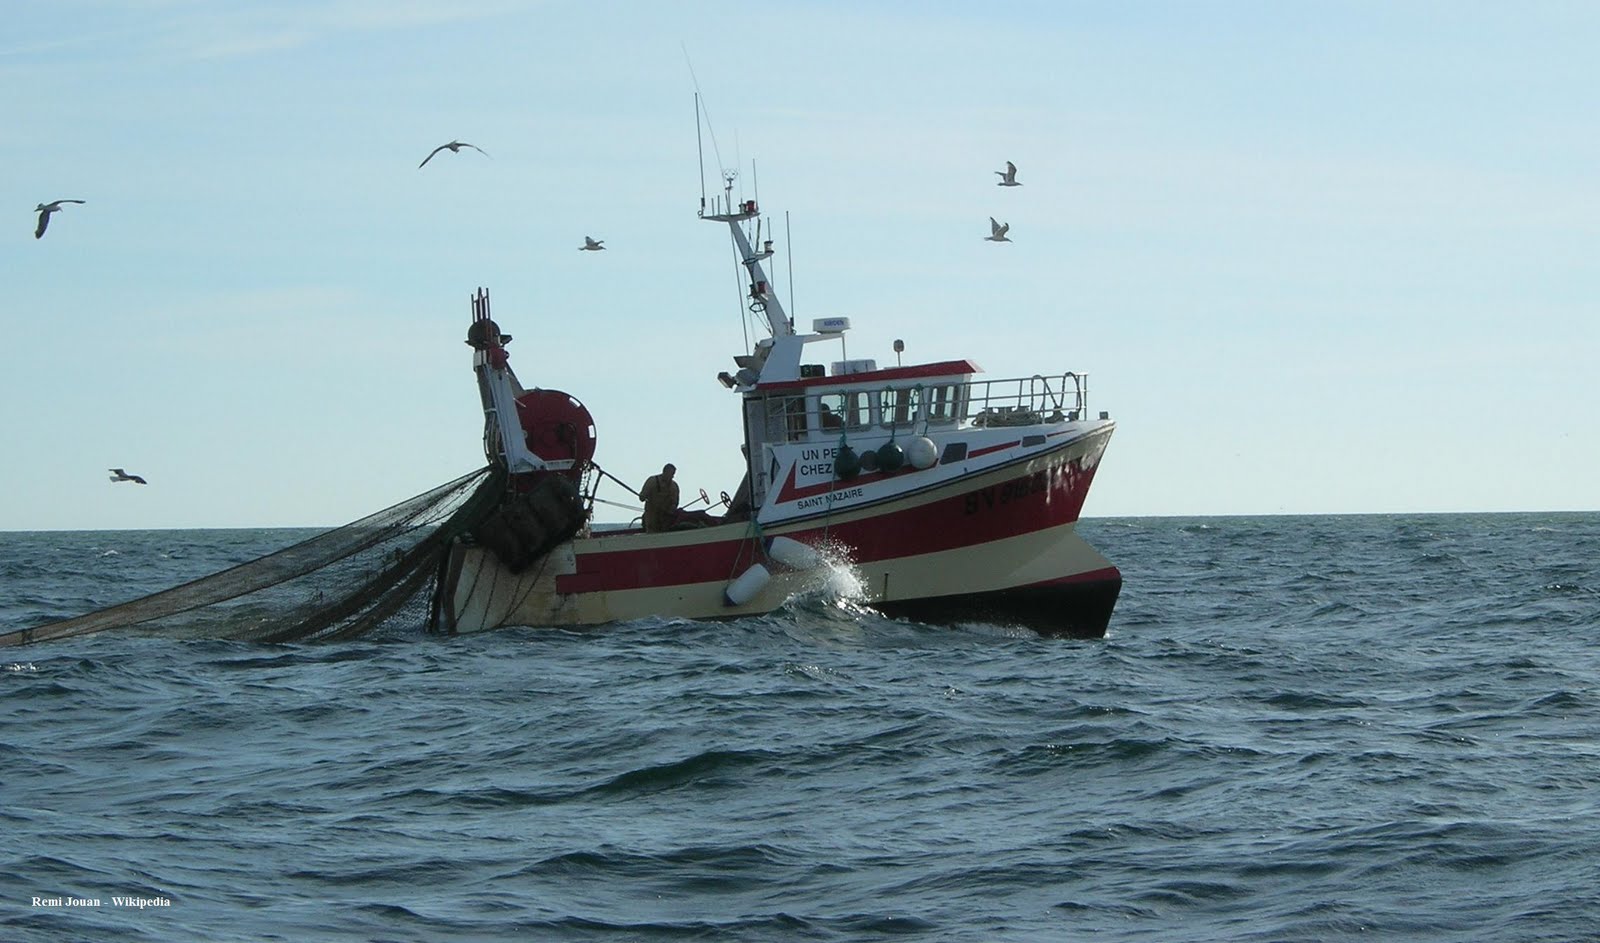 L'Etat prêt à accompagner le renouvellement de la flotte de pêche